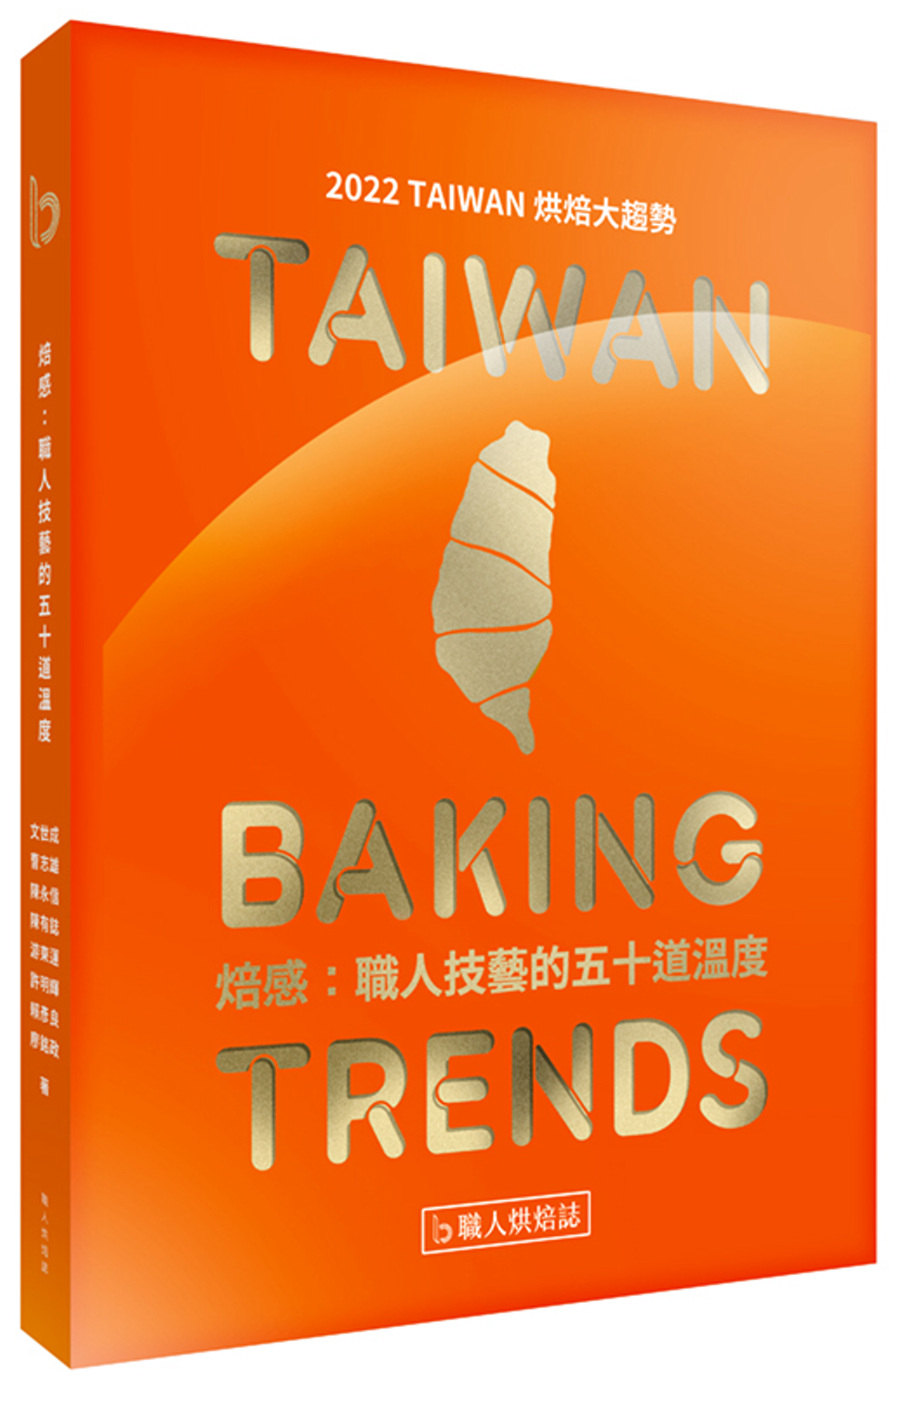 焙感：職人技藝的五十道溫度：2022 TAIWAN 烘焙大趨勢